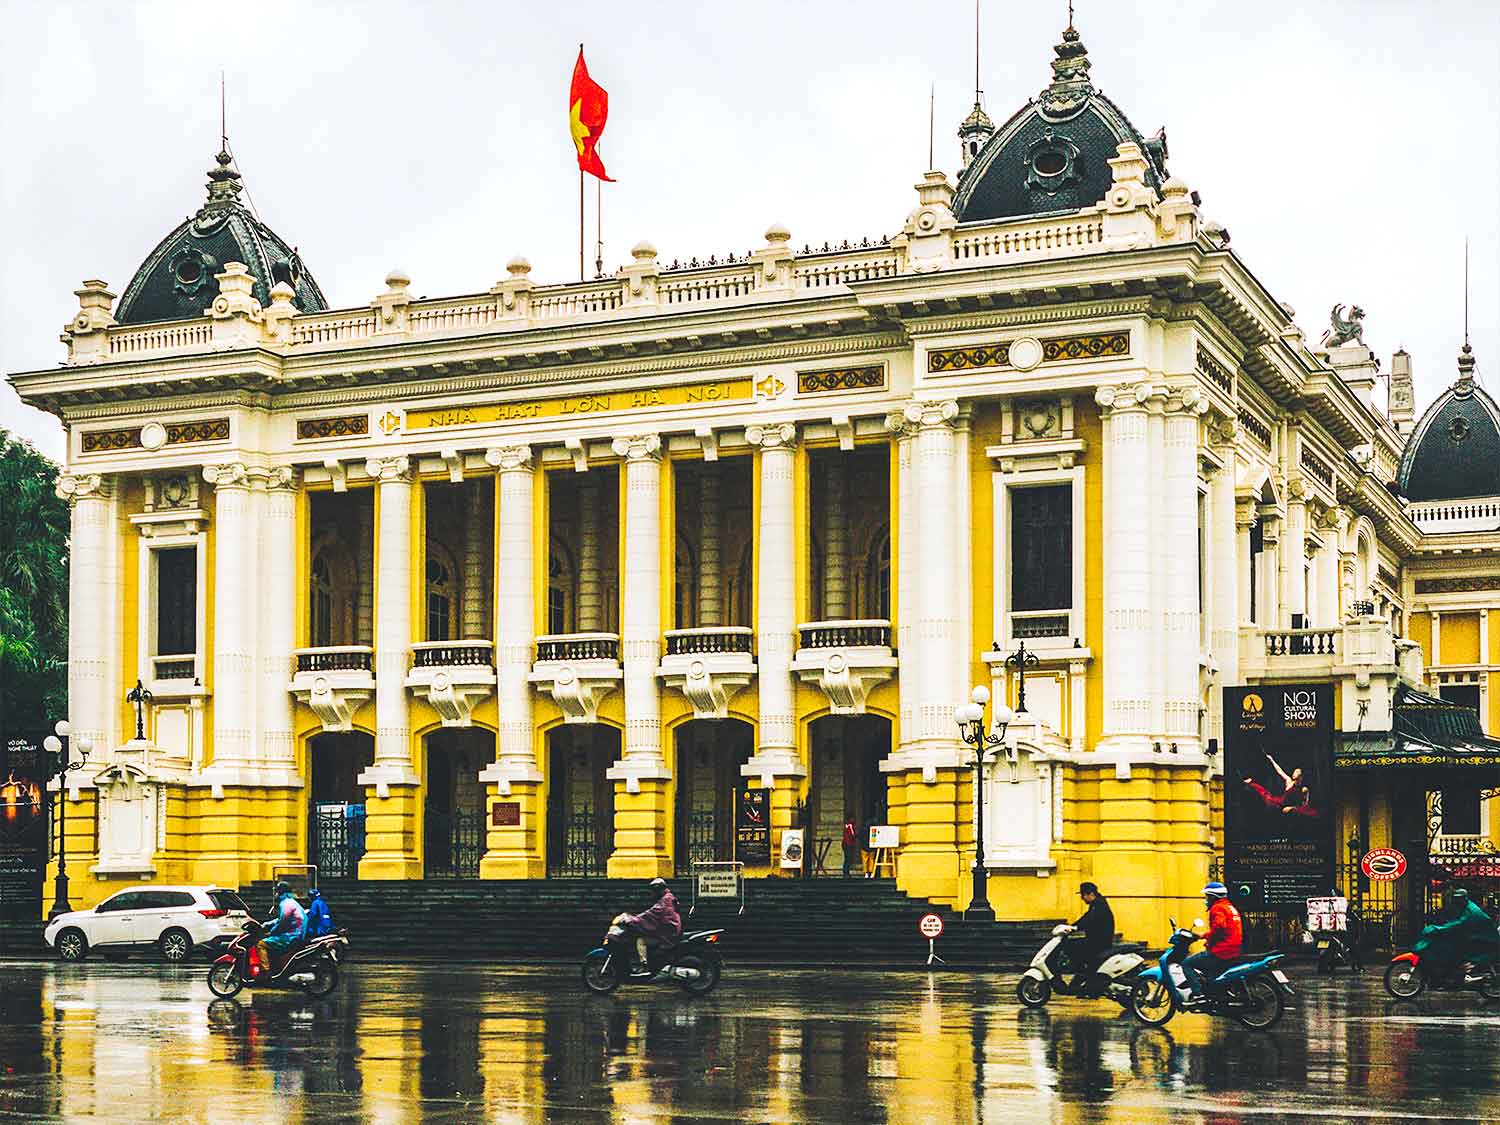 At Hanoi's Old Quarter